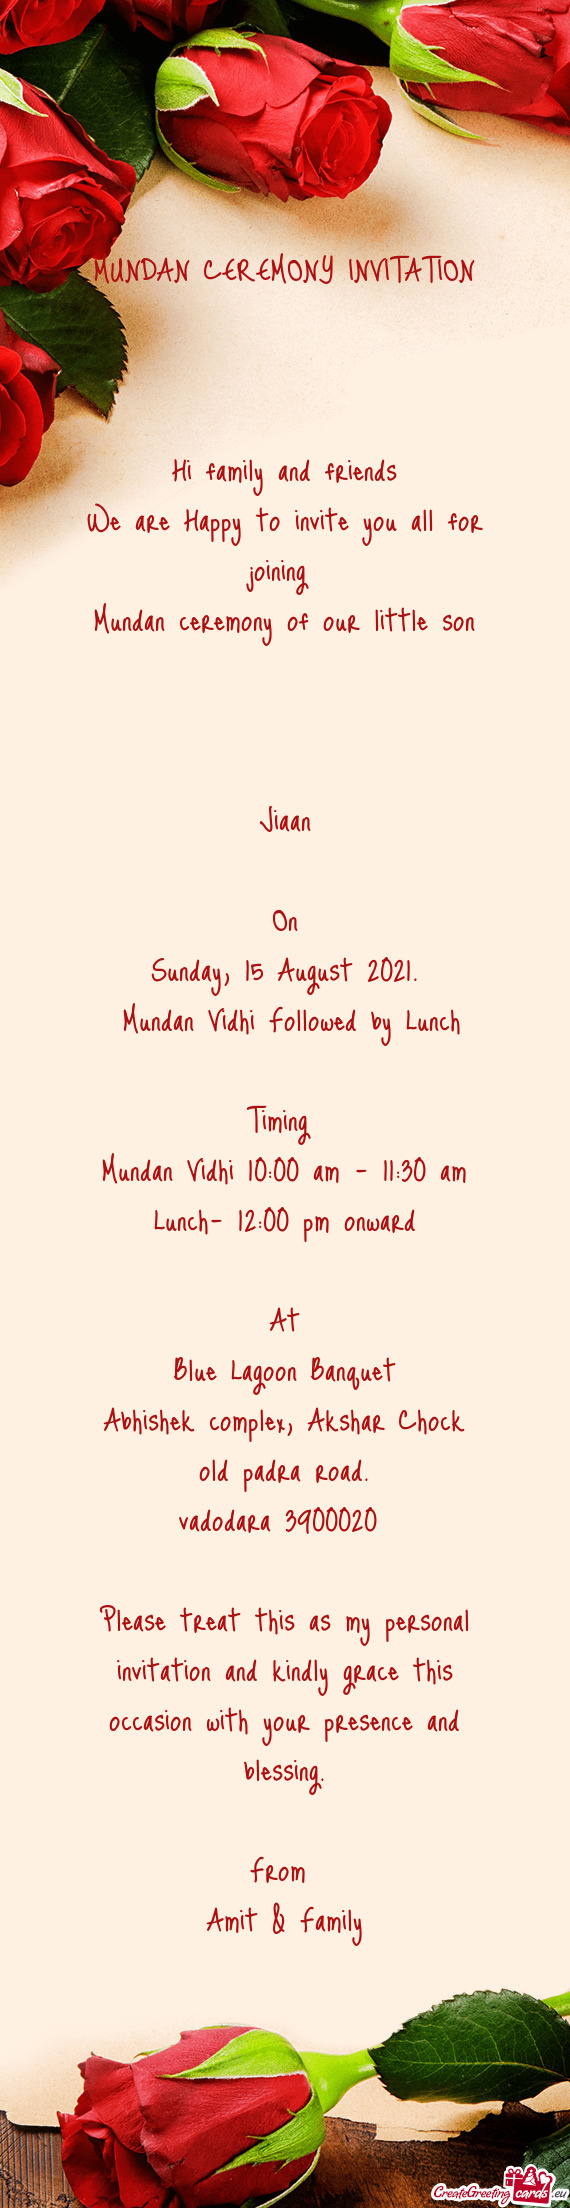 Mundan Vidhi Followed by Lunch